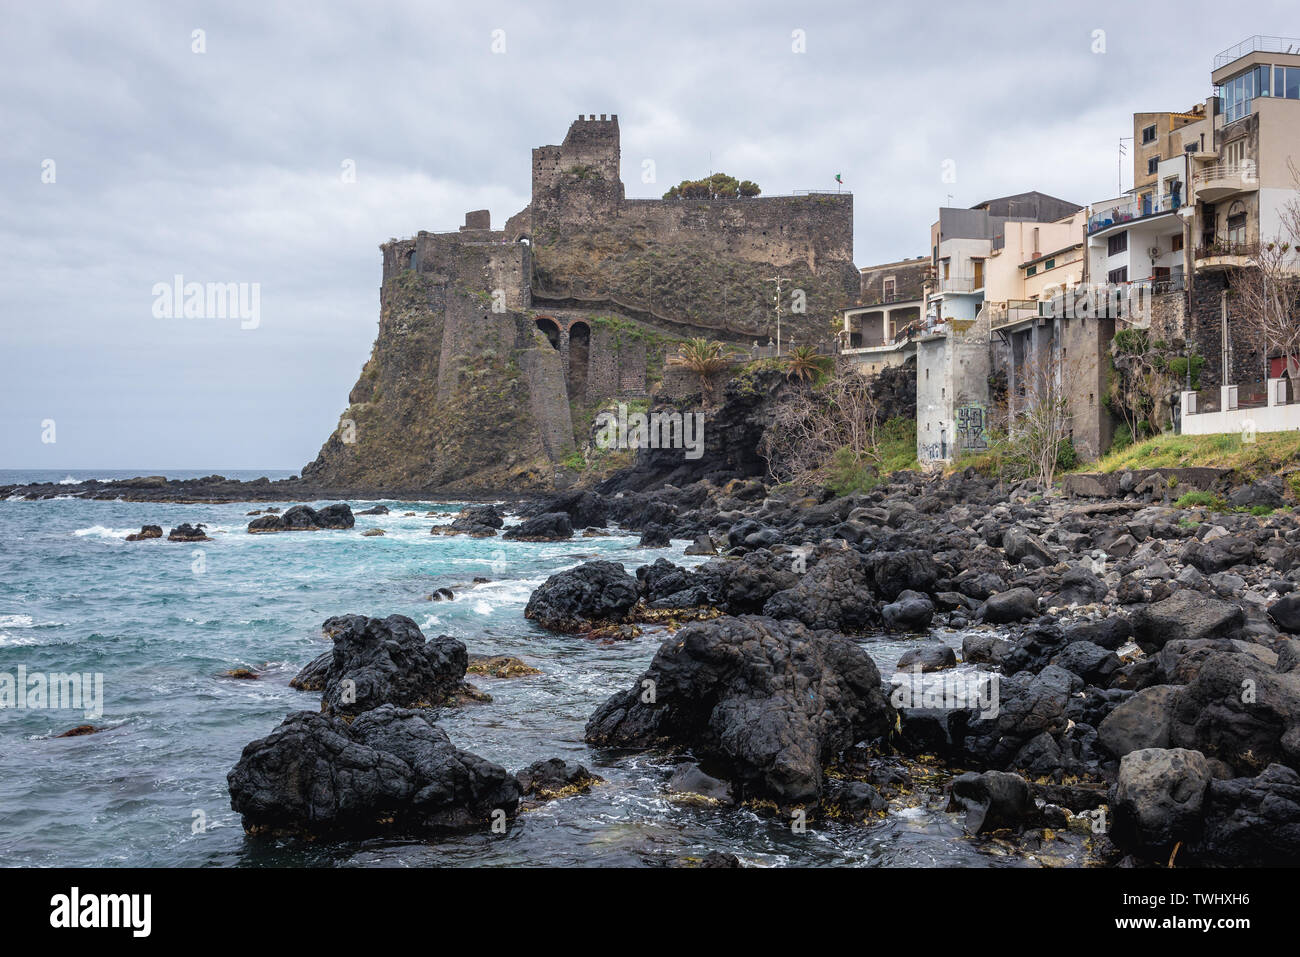 Castello normanno di Aci Castello comune nella città metropolitana di Catania sulla isola di Sicilia in Italia Foto Stock